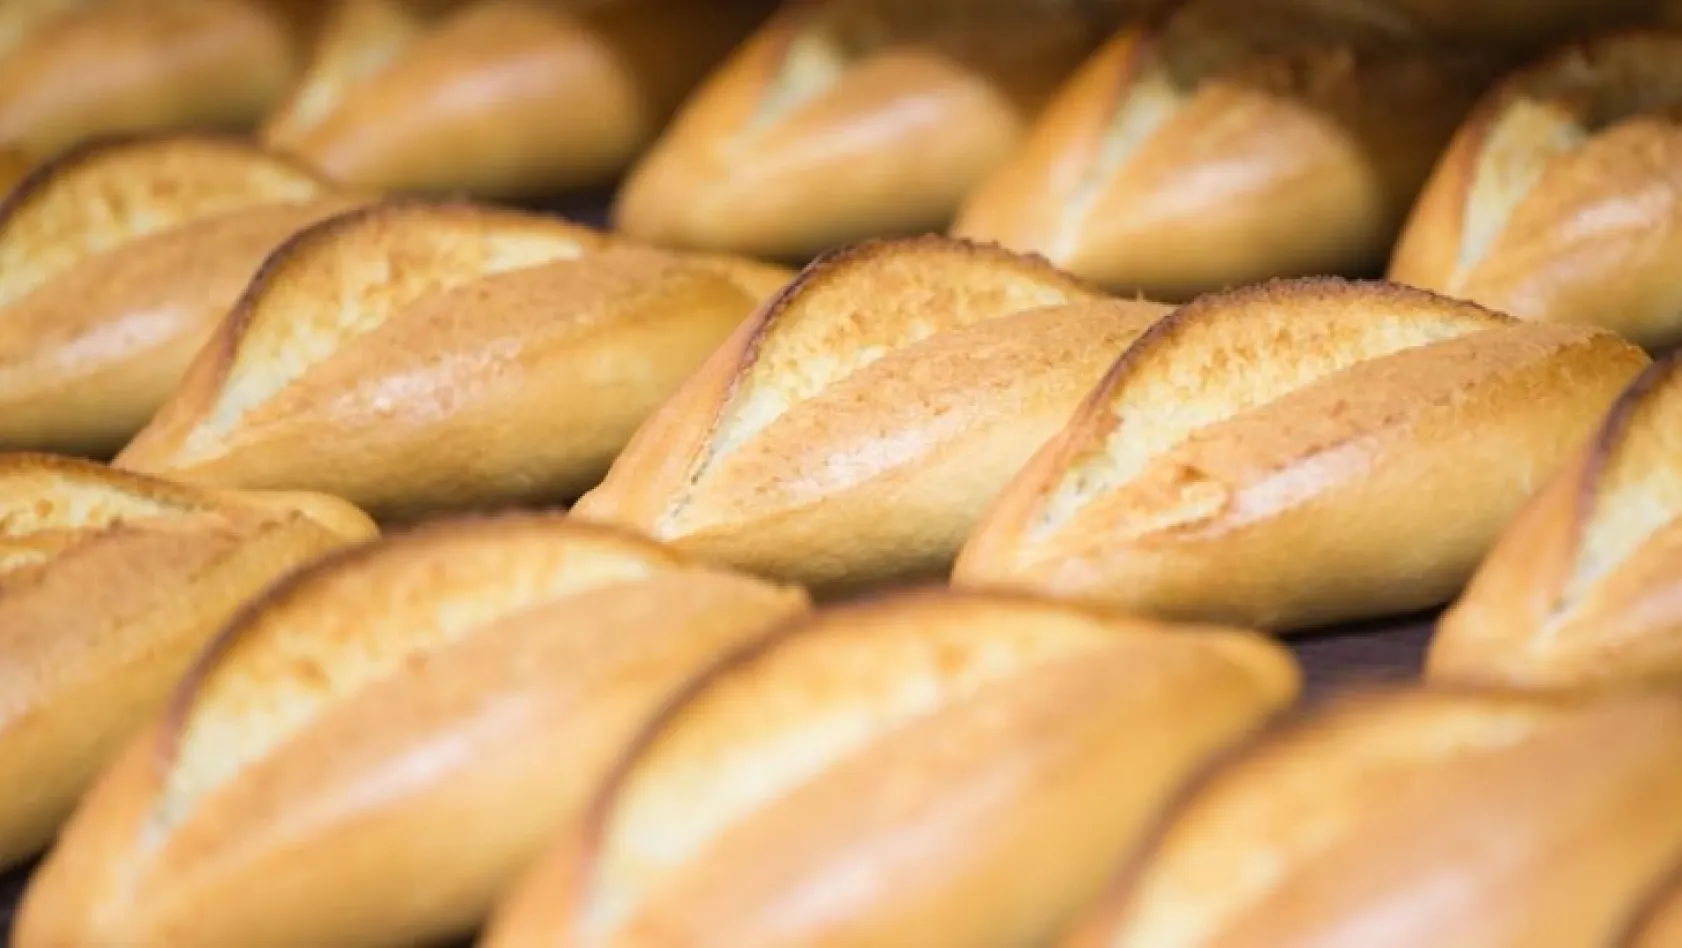 Ekmek fiyatları Ankara'da indirildi, Elazığ'da neden indirilmiyor?